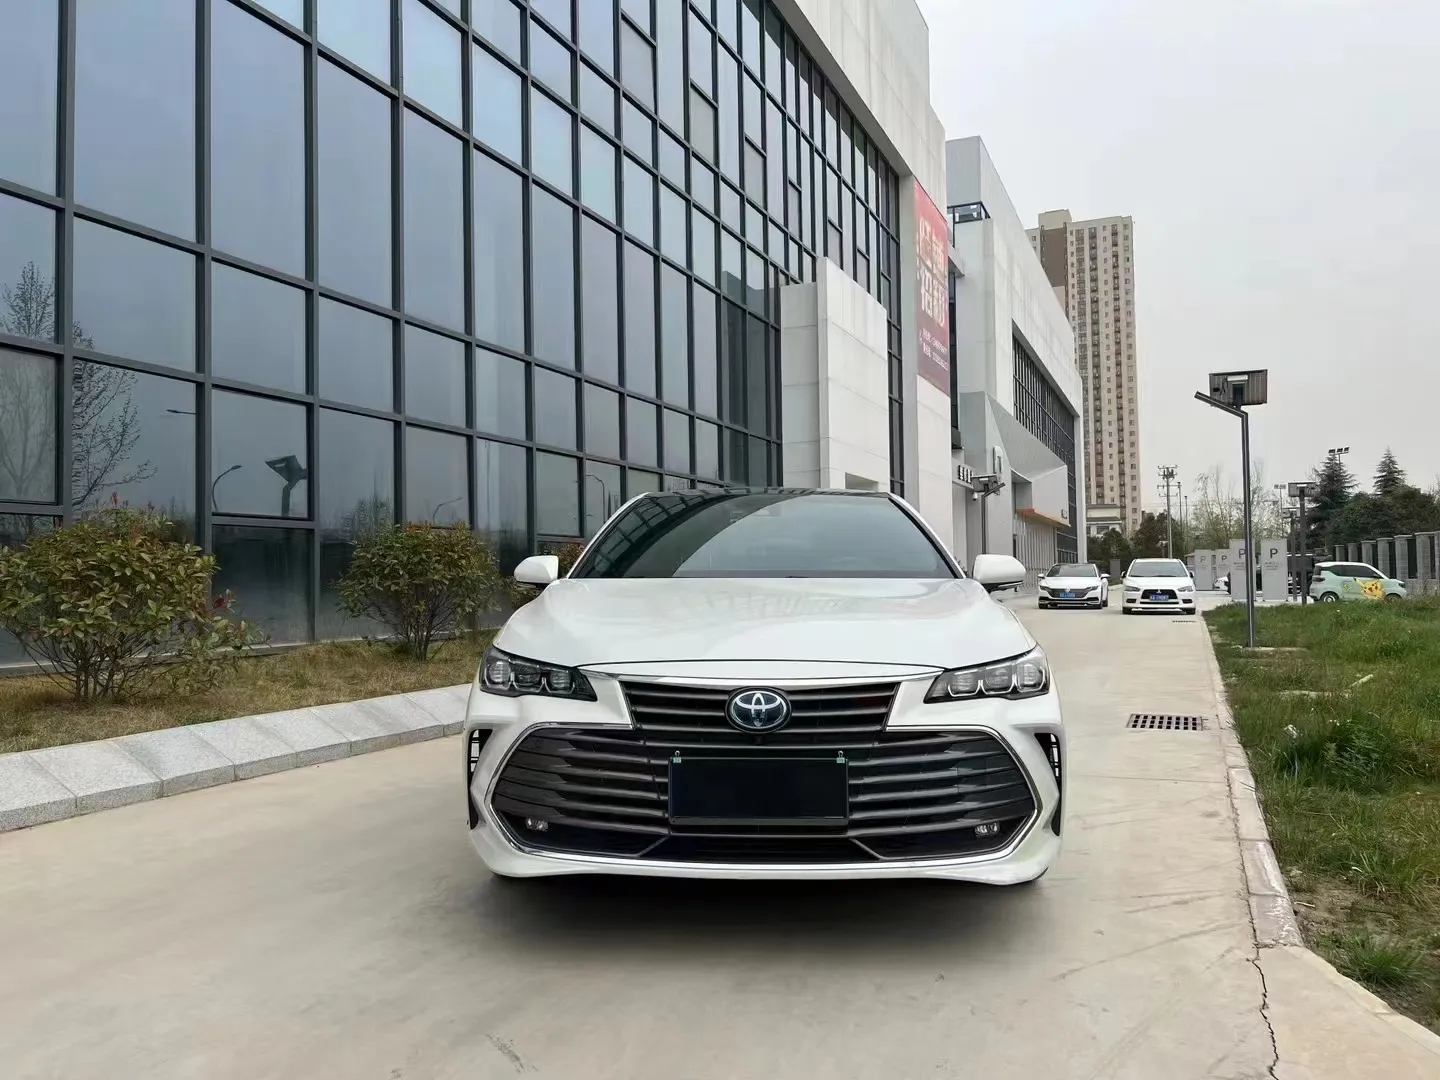 Toyota Yazhoulong 자동차 판매 저렴한 럭셔리 중형 자동차 재고가 대량으로 판매